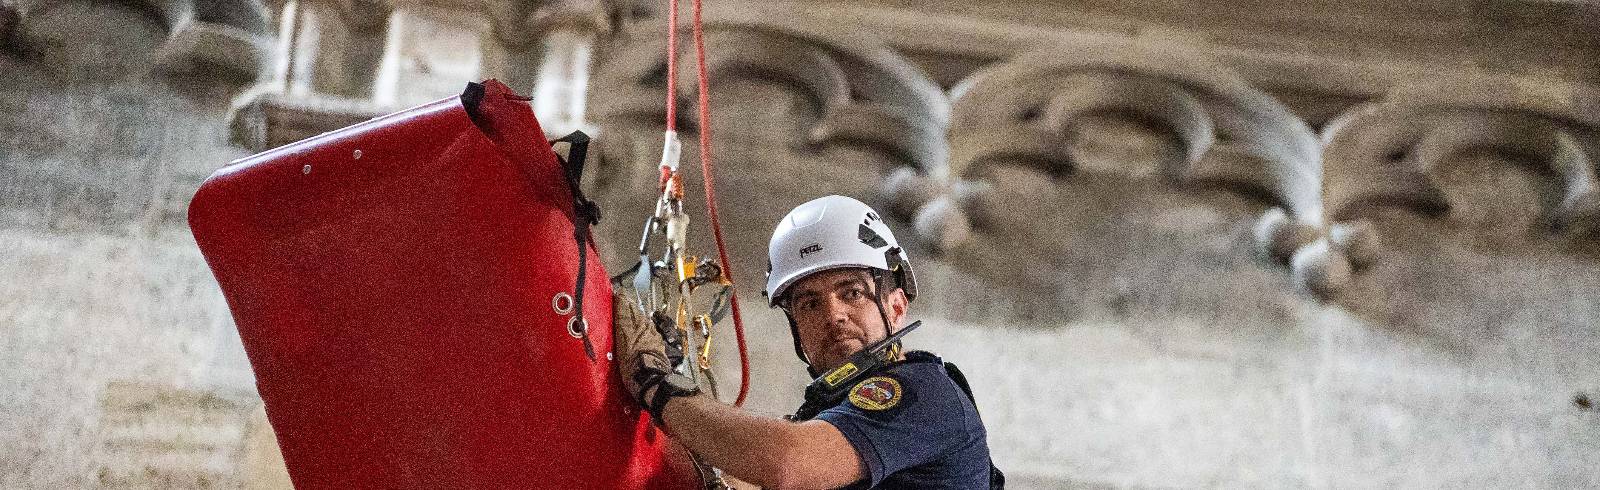 Stephansdom: Rettungseinsatz in 70 Metern Höhe